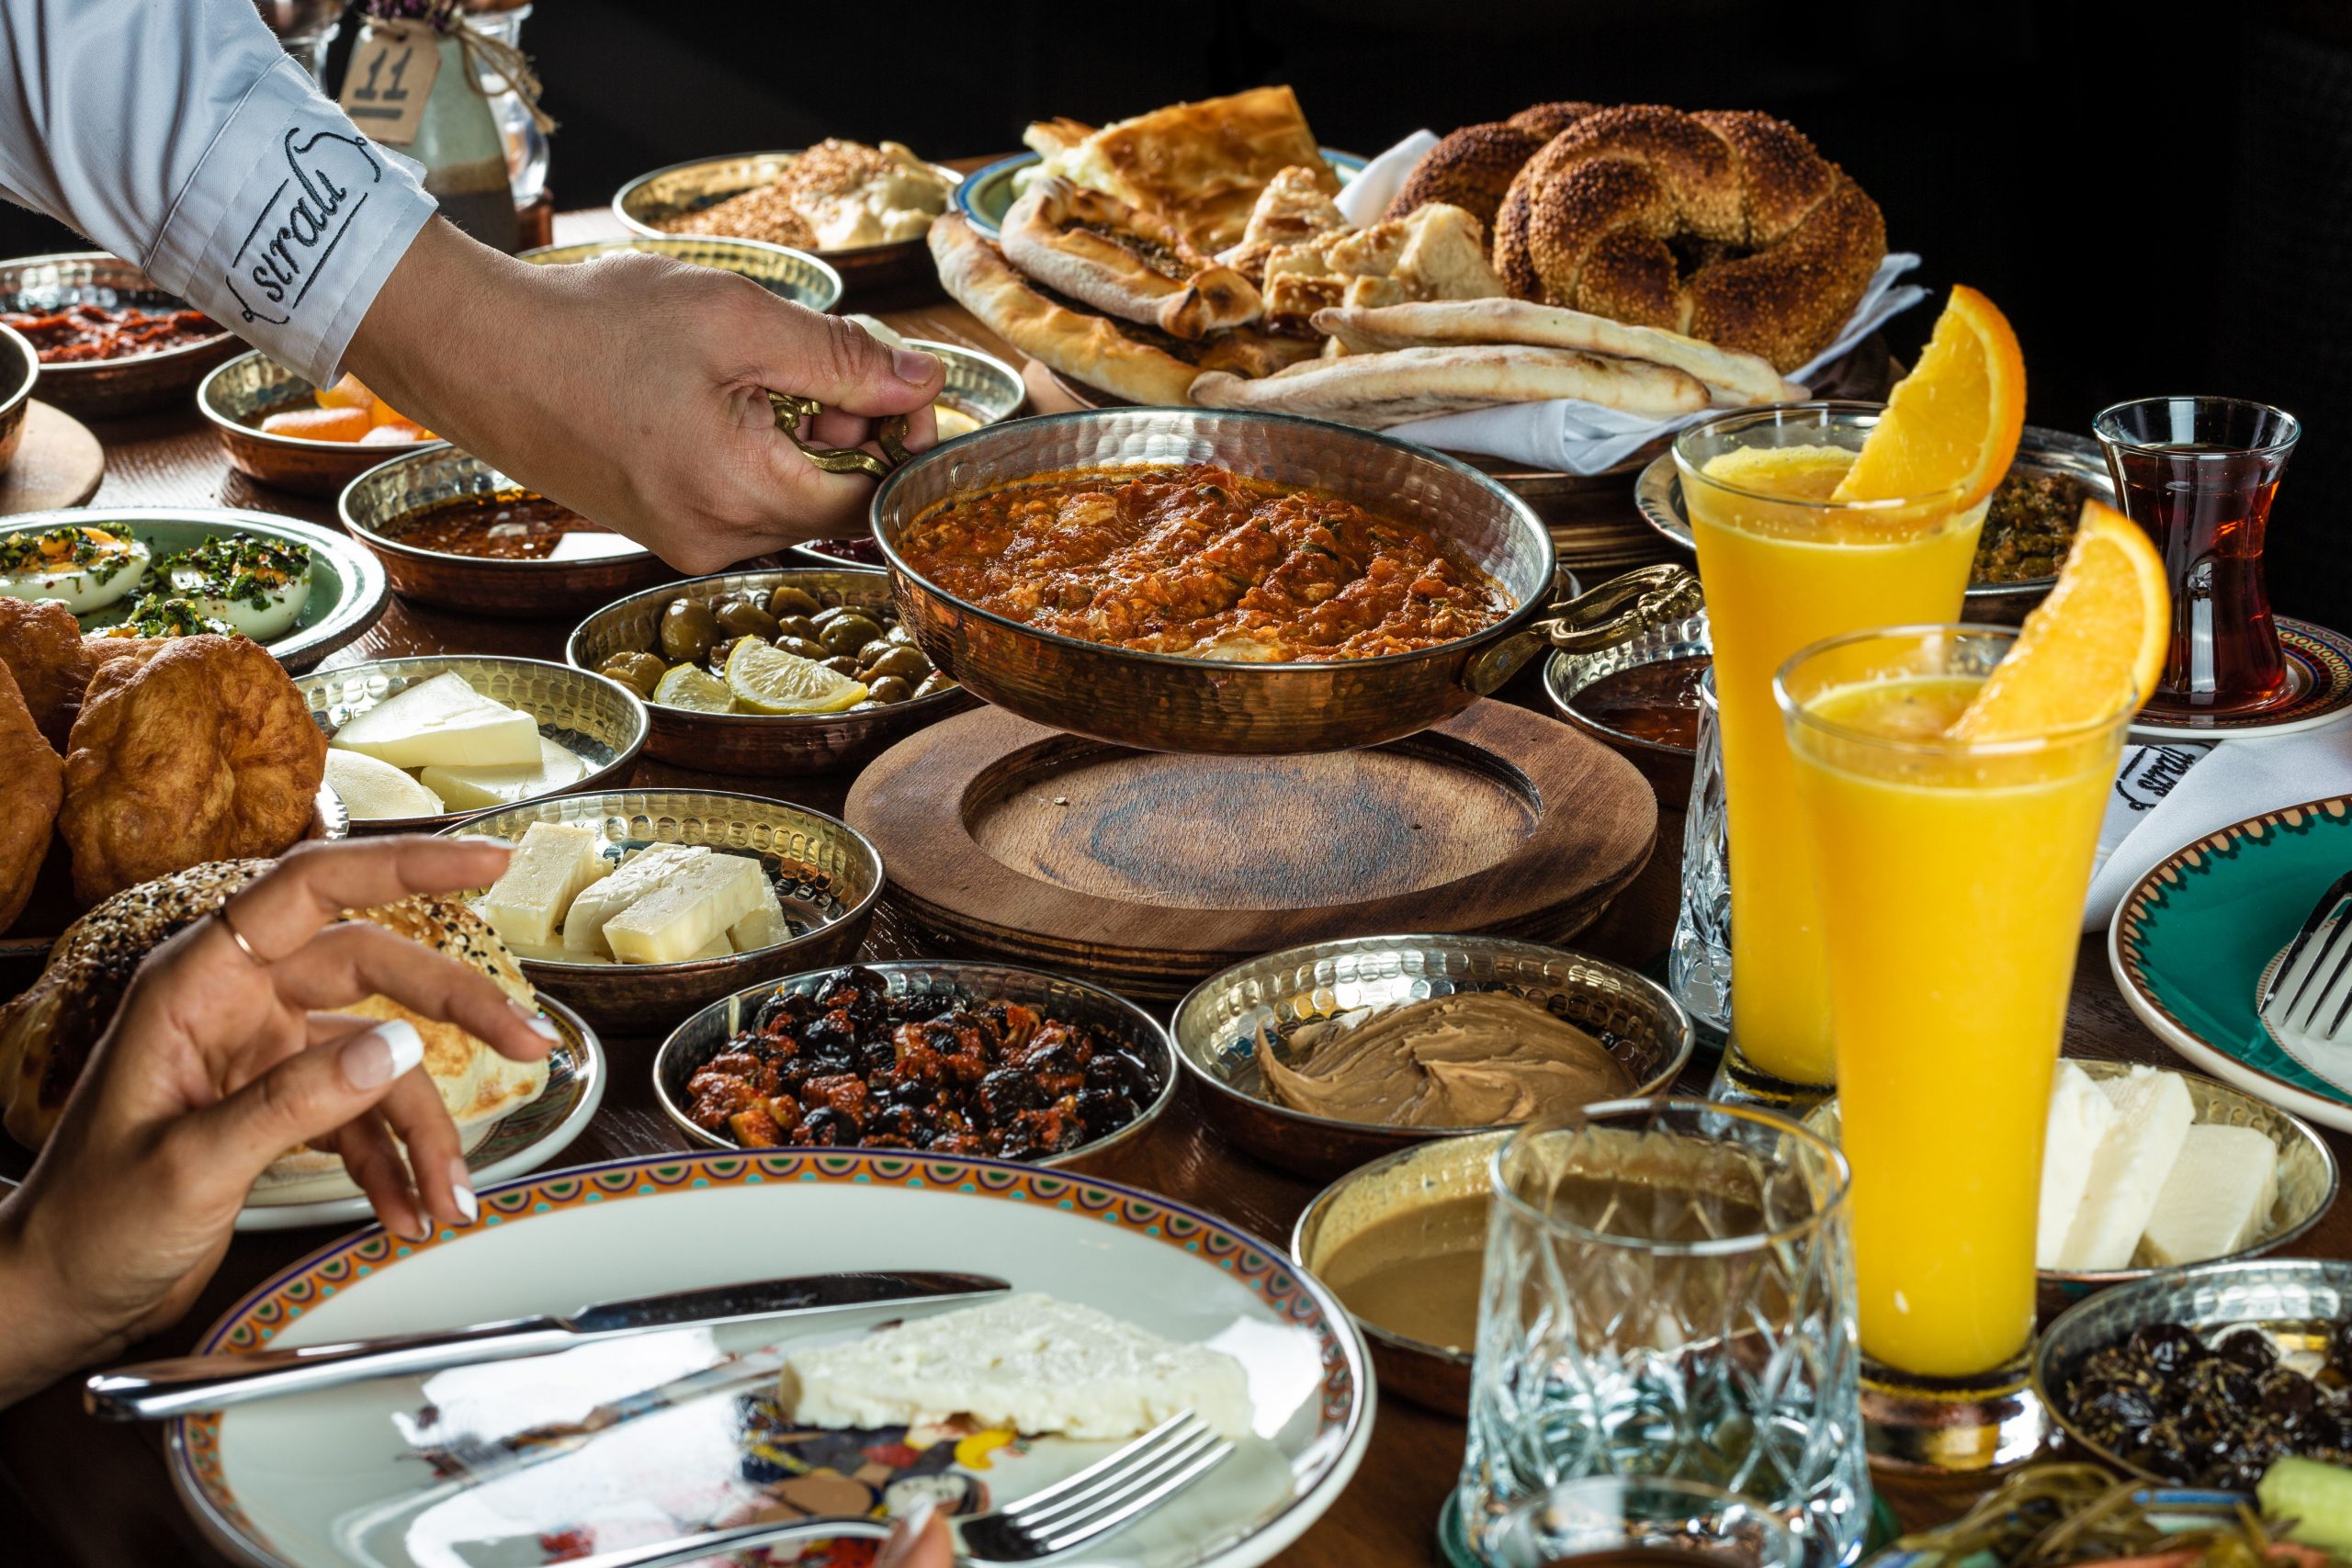 المطعم التركي الشهير سيرالي يطلق قائمة فطور تقليدية جديدة